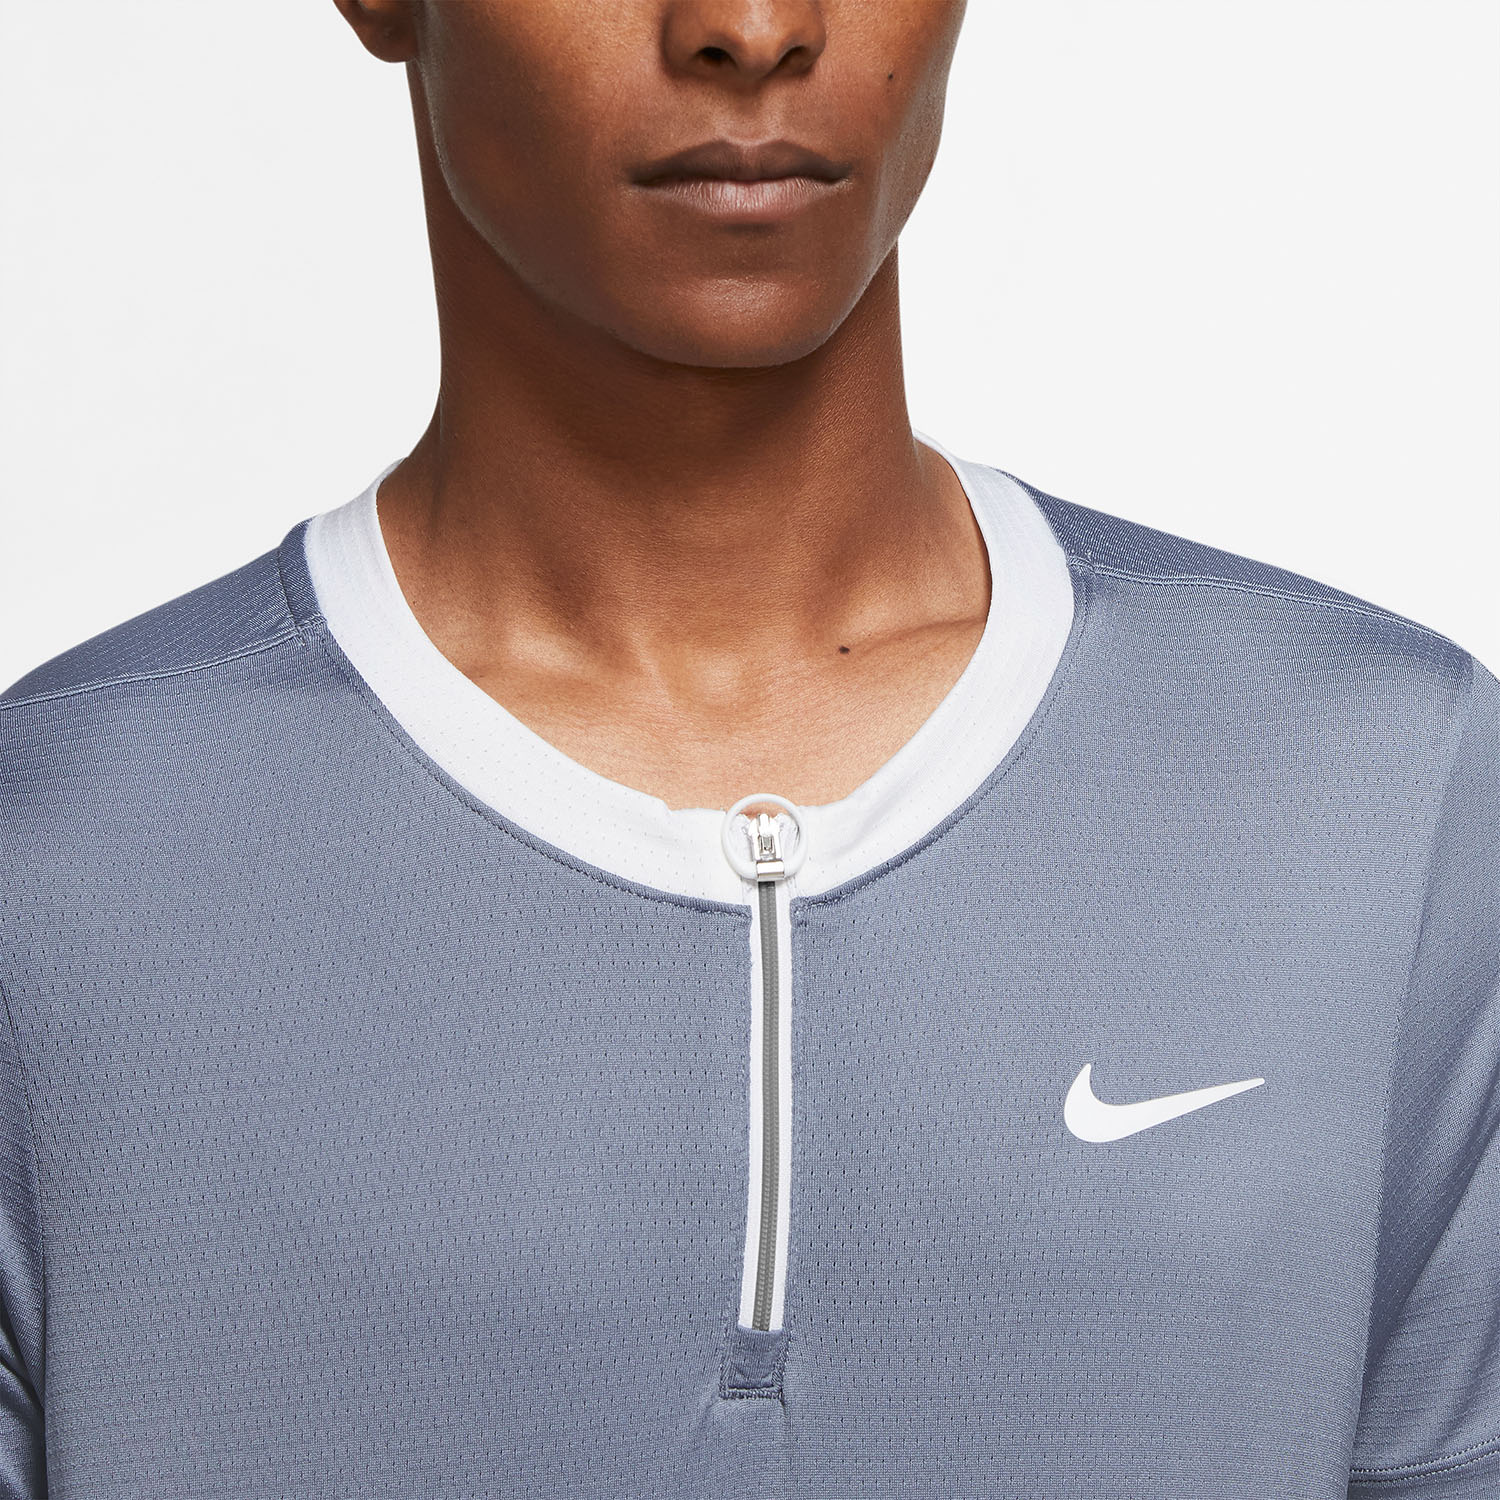 Nike Dri-FIT Advantage Polo - Ashen Slate/White